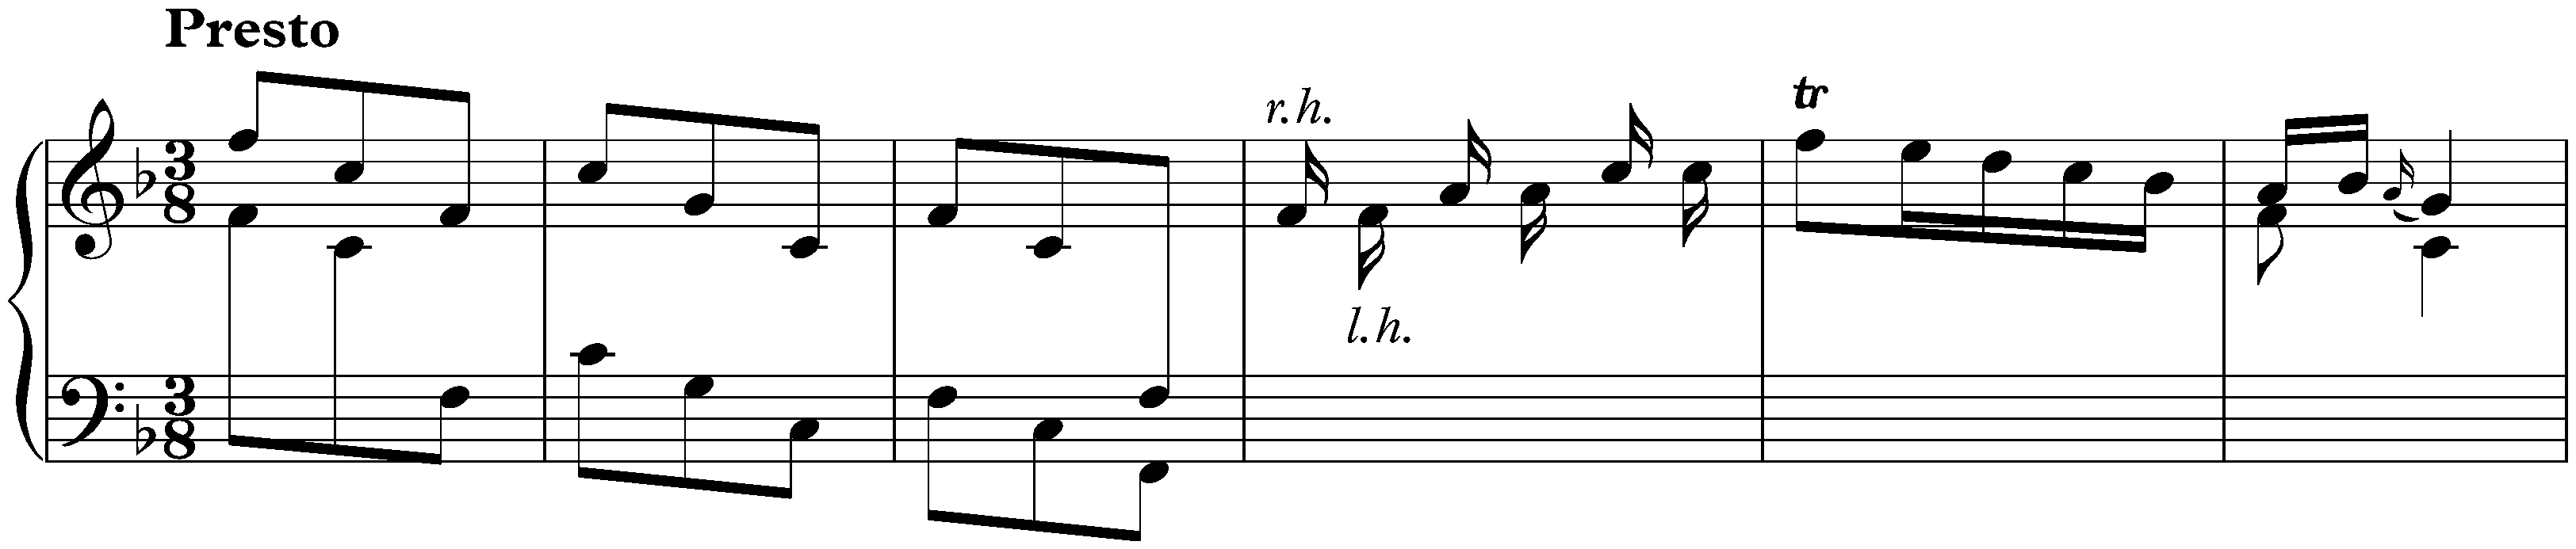 Sonata in F major, K. 17